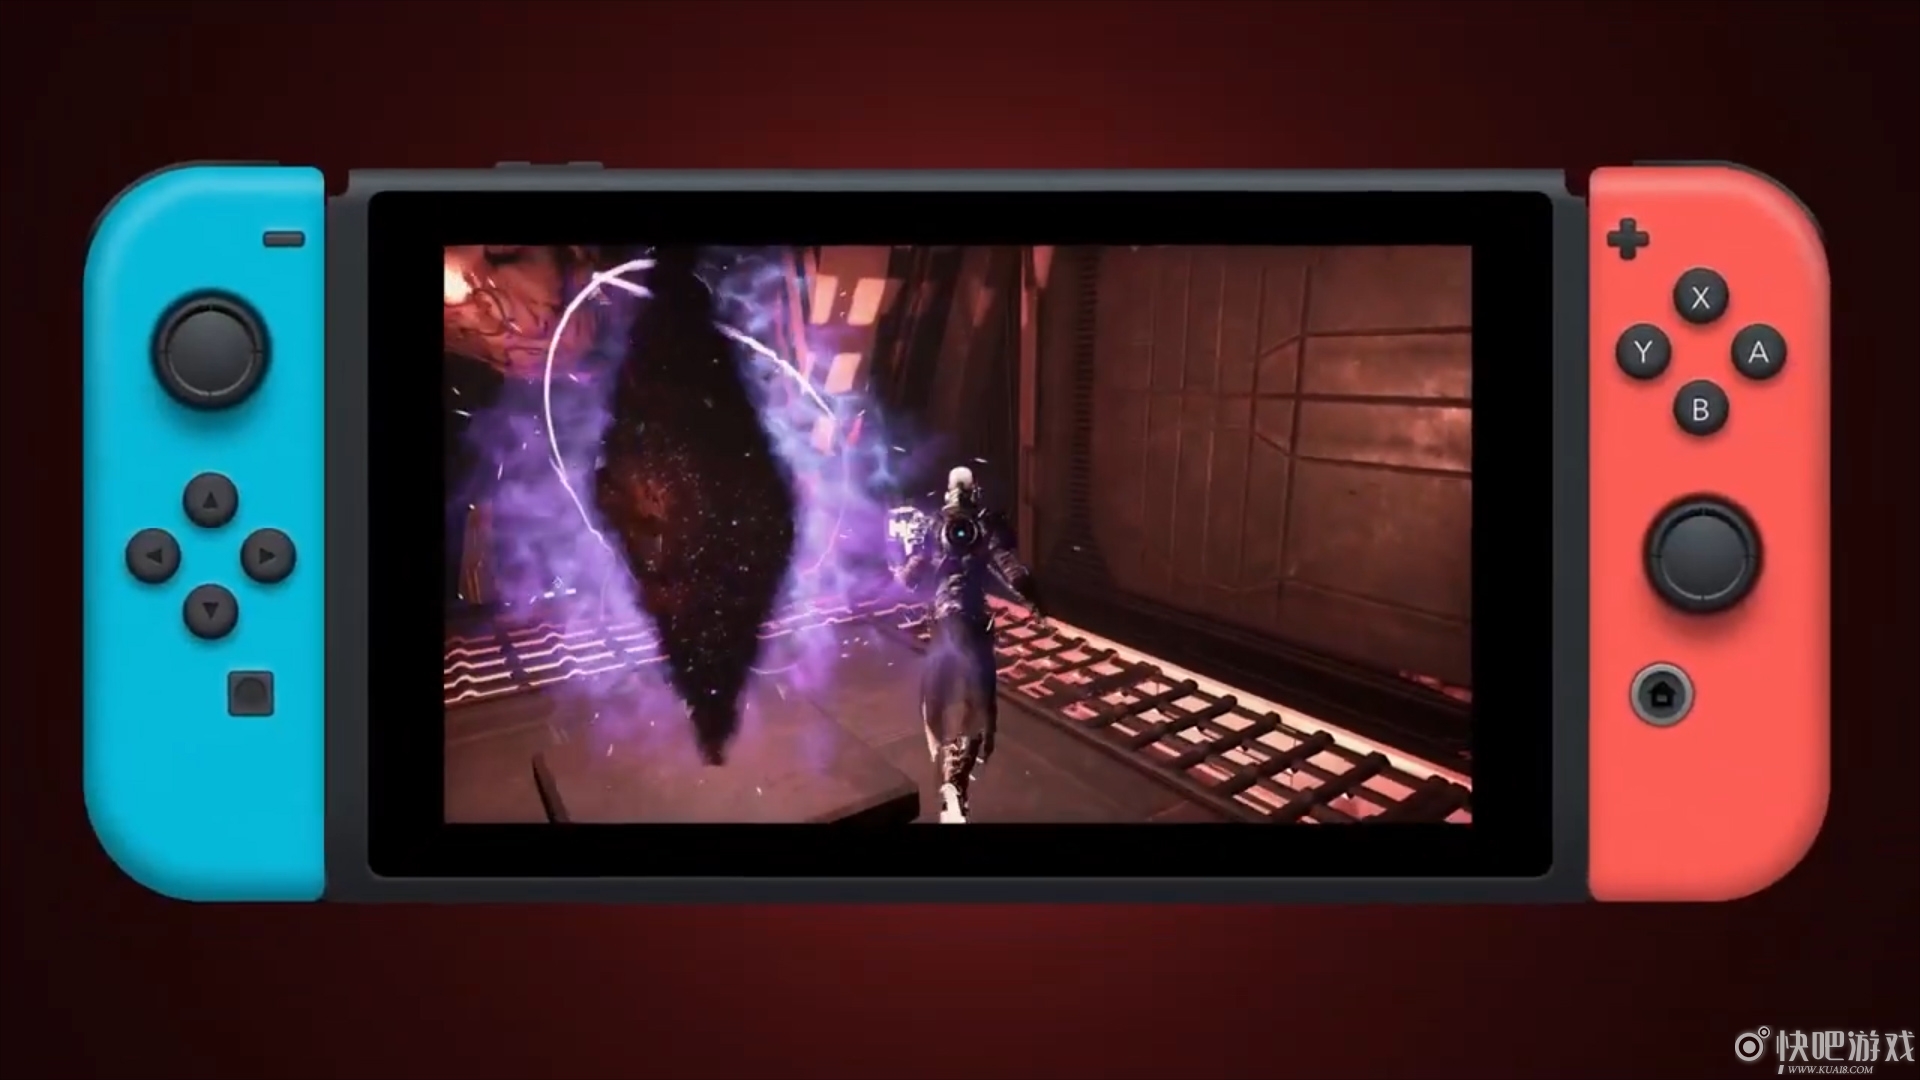 IGN6分作品《地狱时刻》宣传视频 黑魂既视感满满